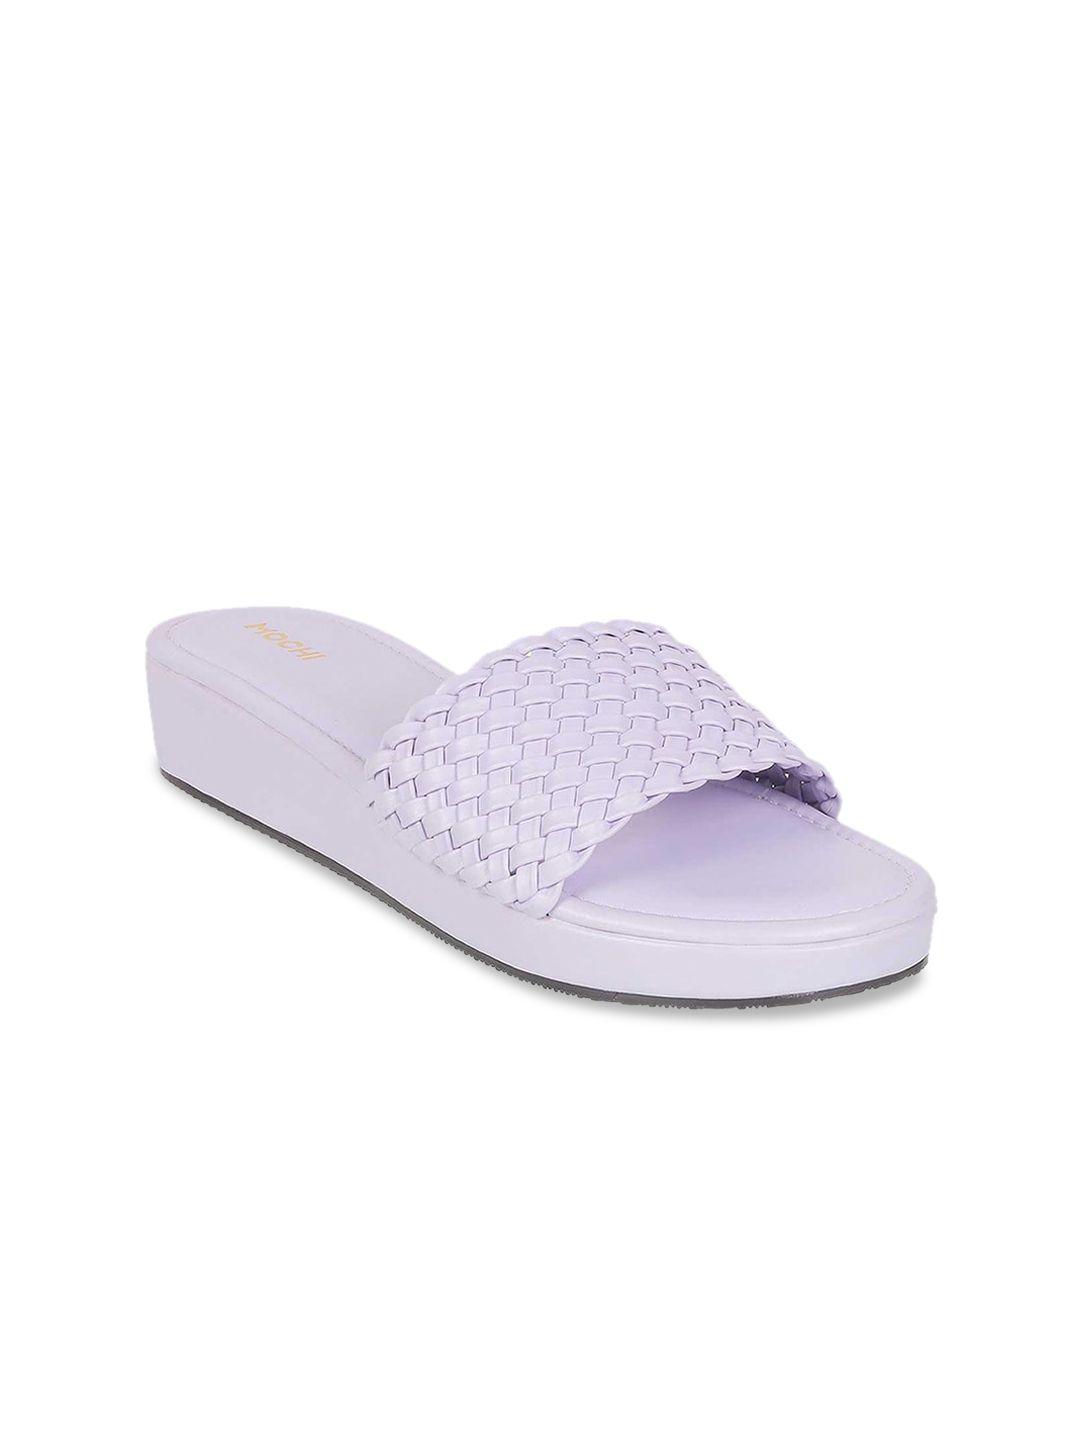 mochi women open toe flats